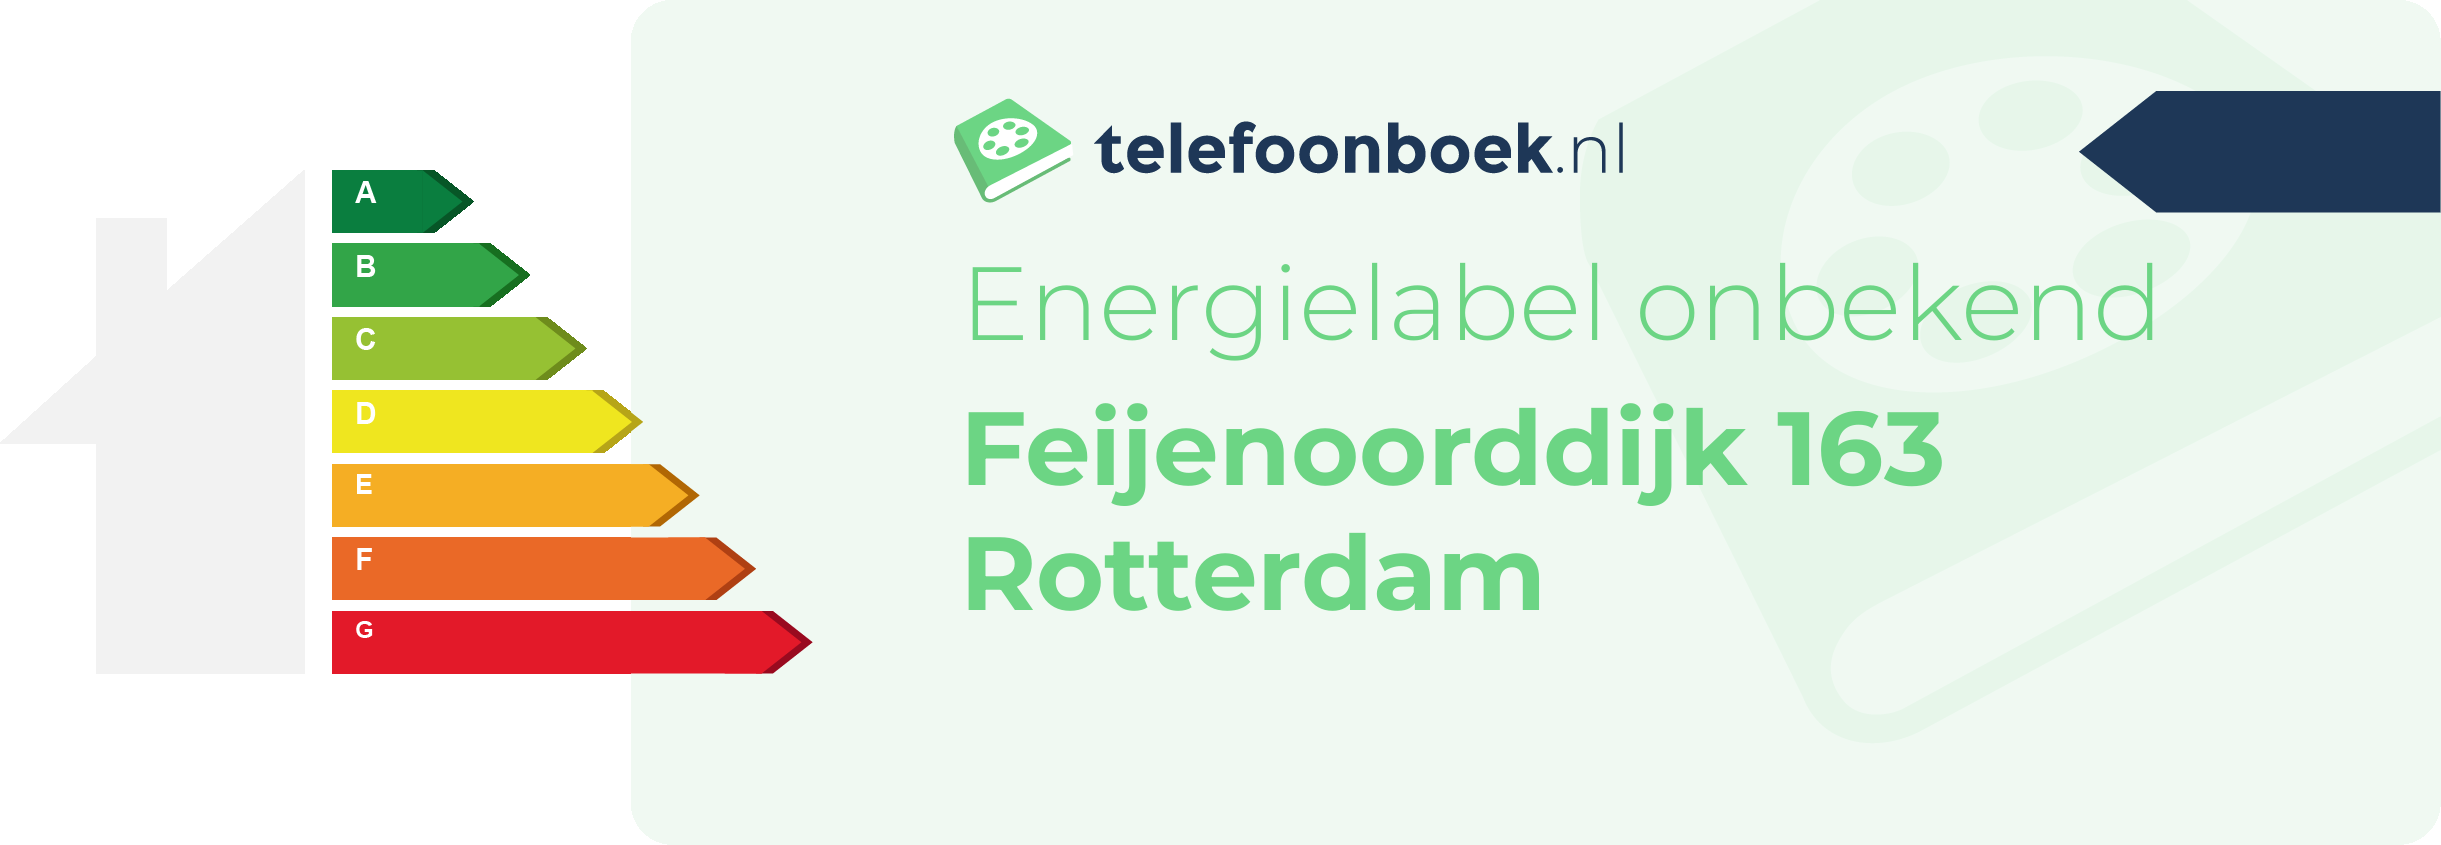 Energielabel Feijenoorddijk 163 Rotterdam